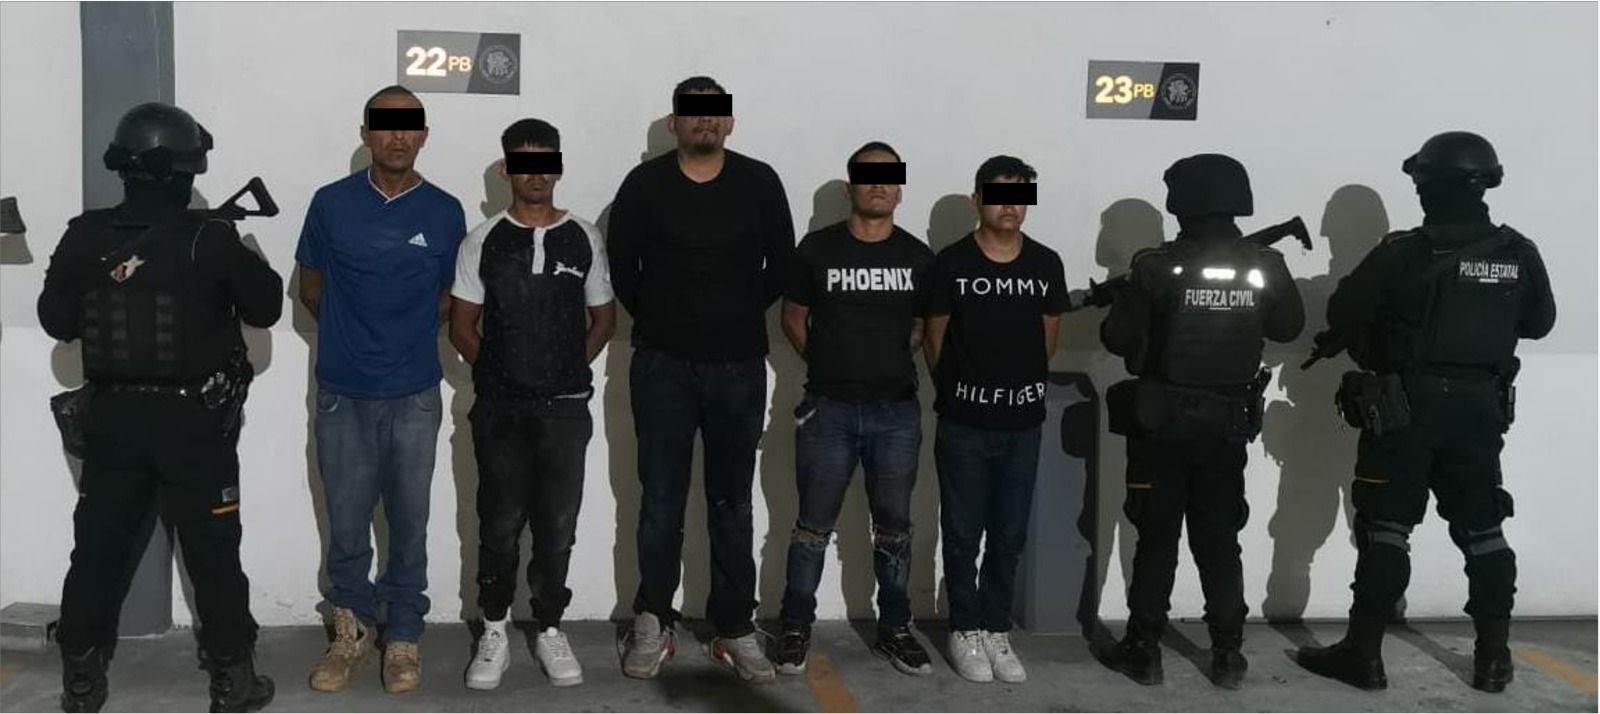 El presunto líder de una célula criminal en el municipio de Sabinas Hidalgo, fue detenido junto con otras cuatro personas por elementos de Fuerza Civil, la noche del sábado en esa localidad del norte de Nuevo León.